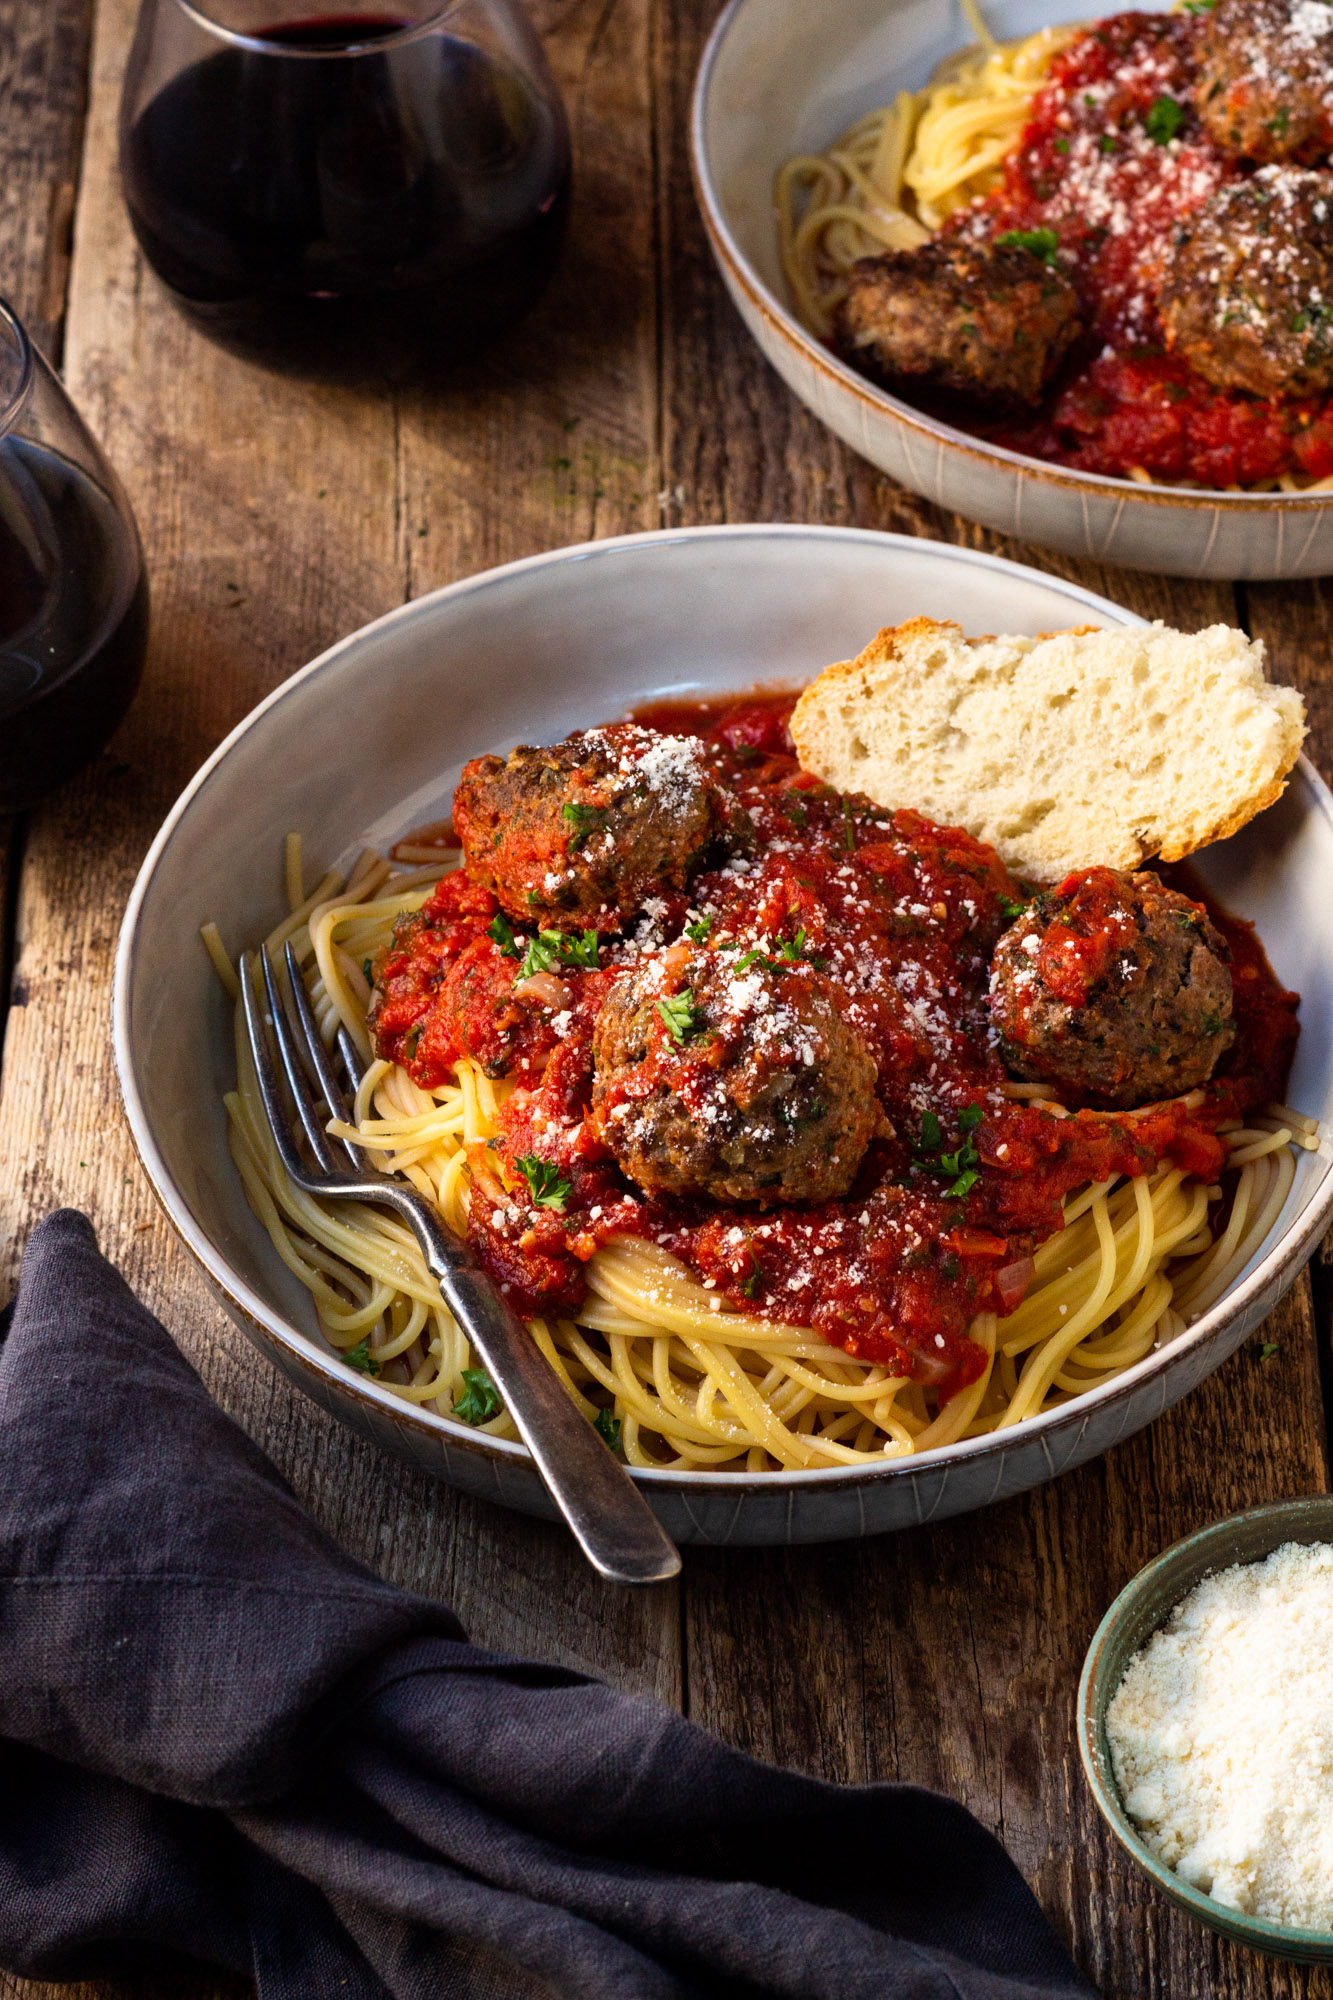 https://www.modernfarmhouseeats.com/wp-content/uploads/2020/12/Homemade-Spaghetti-and-Meatballs-31.jpg